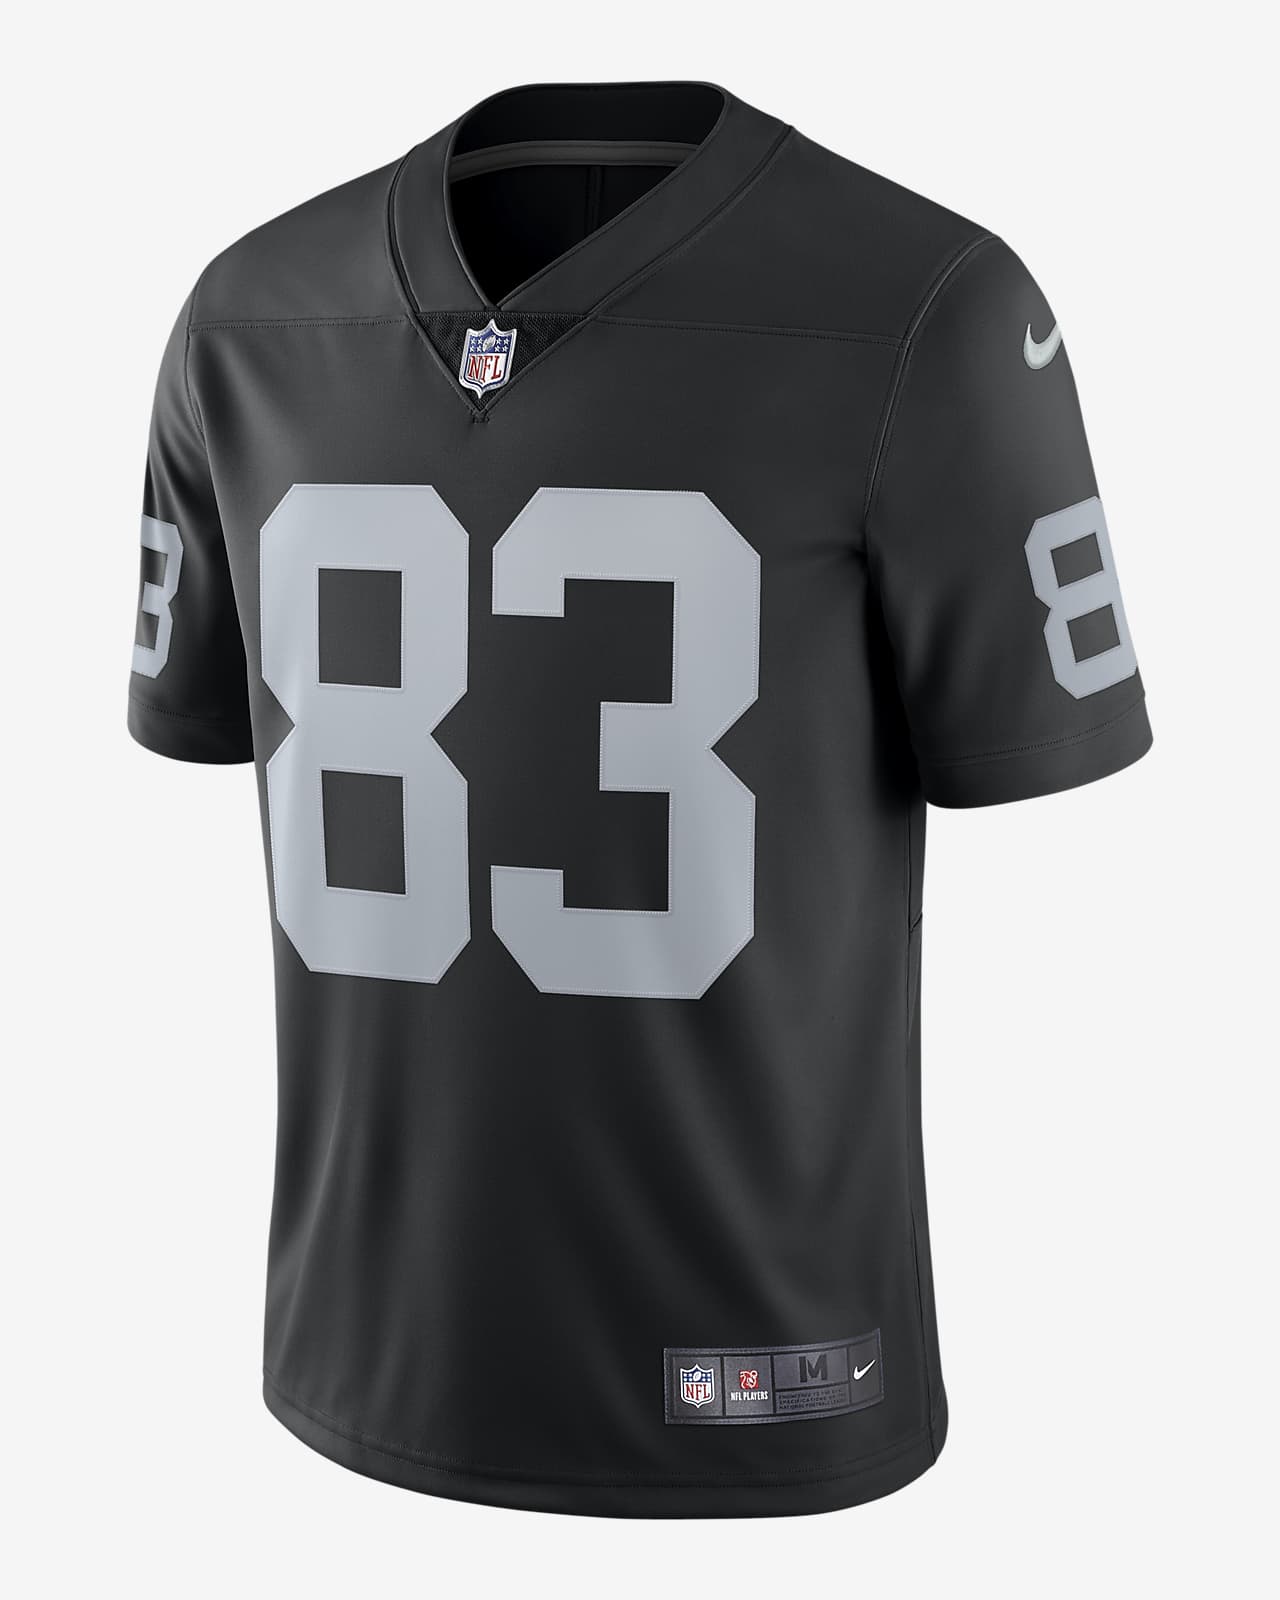 Jersey de fútbol americano edición limitada para hombre NFL Las Raiders Nike Vapor Untouchable (Darren Waller). Nike.com